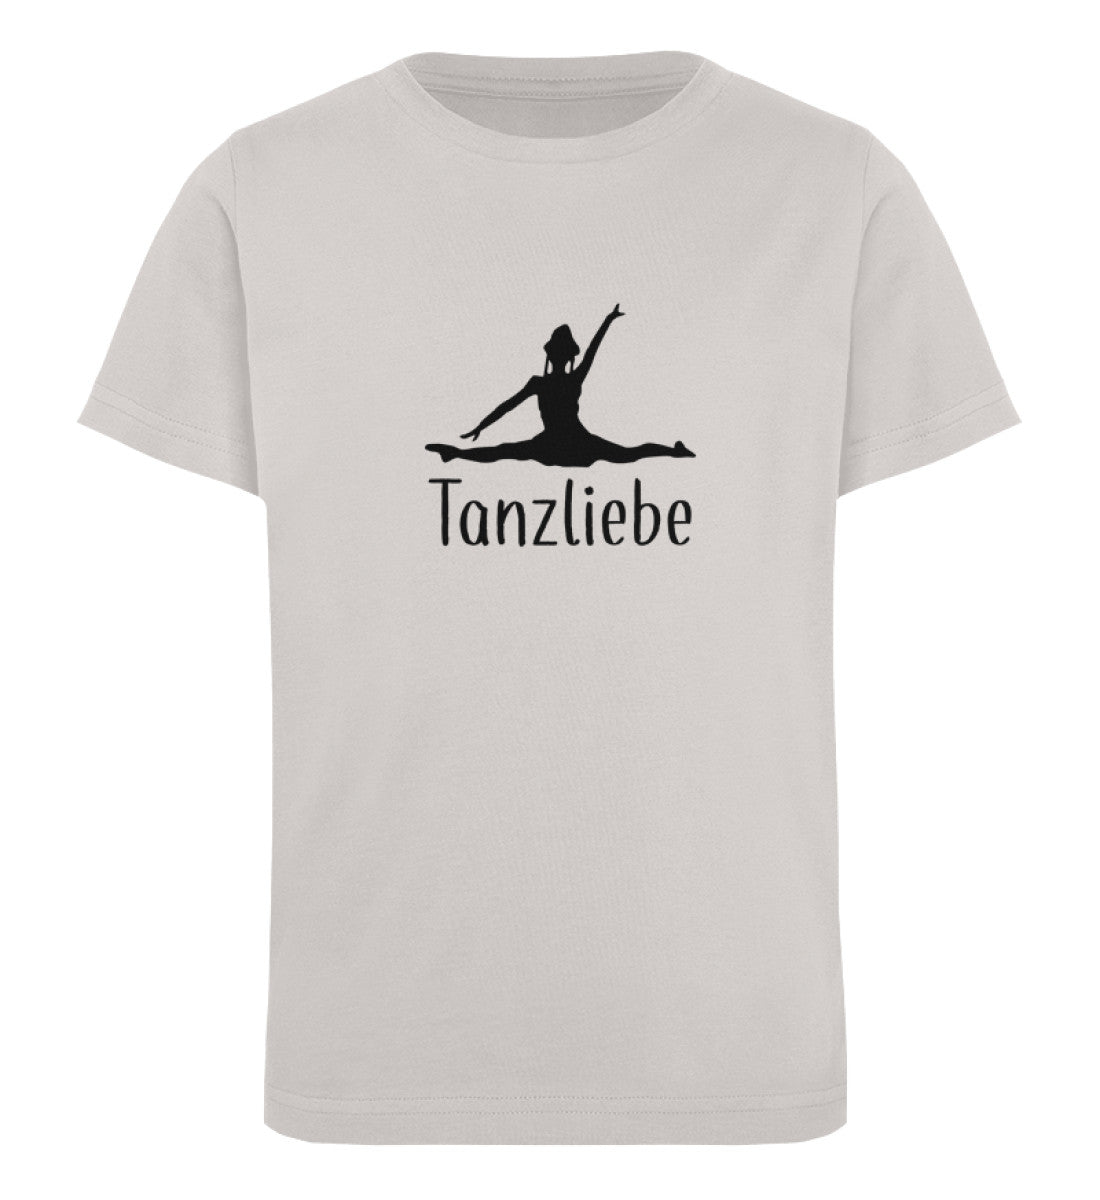 Tanzliebe Kids Organic Shirt - talejo